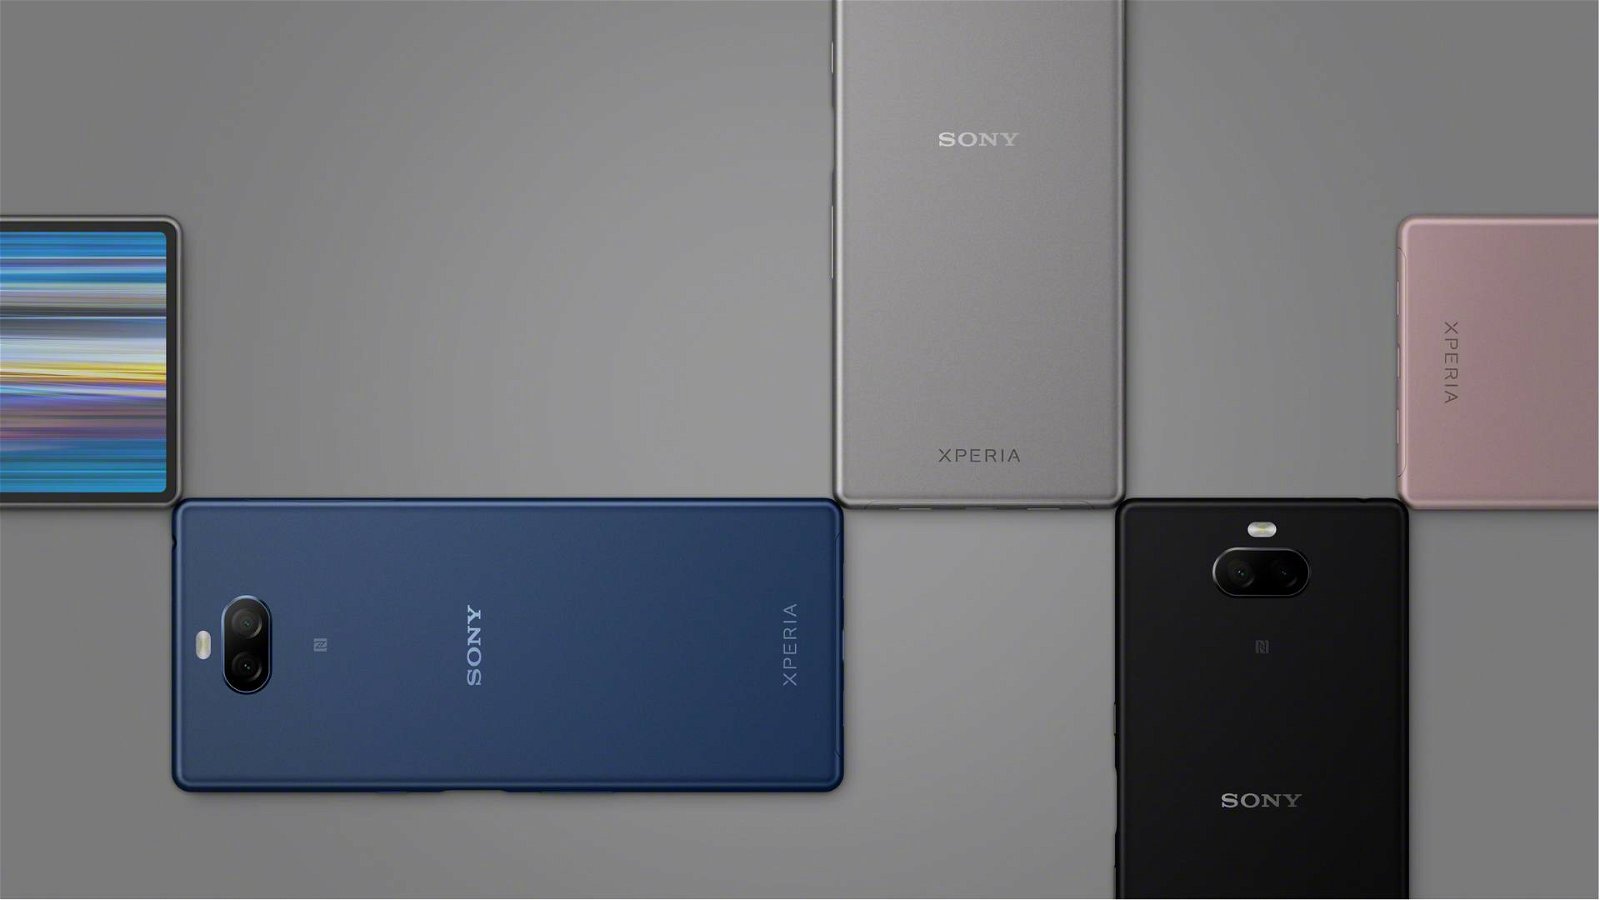 Immagine di Sony, lavoratori della divisione smartphone dimezzati entro il 2020?